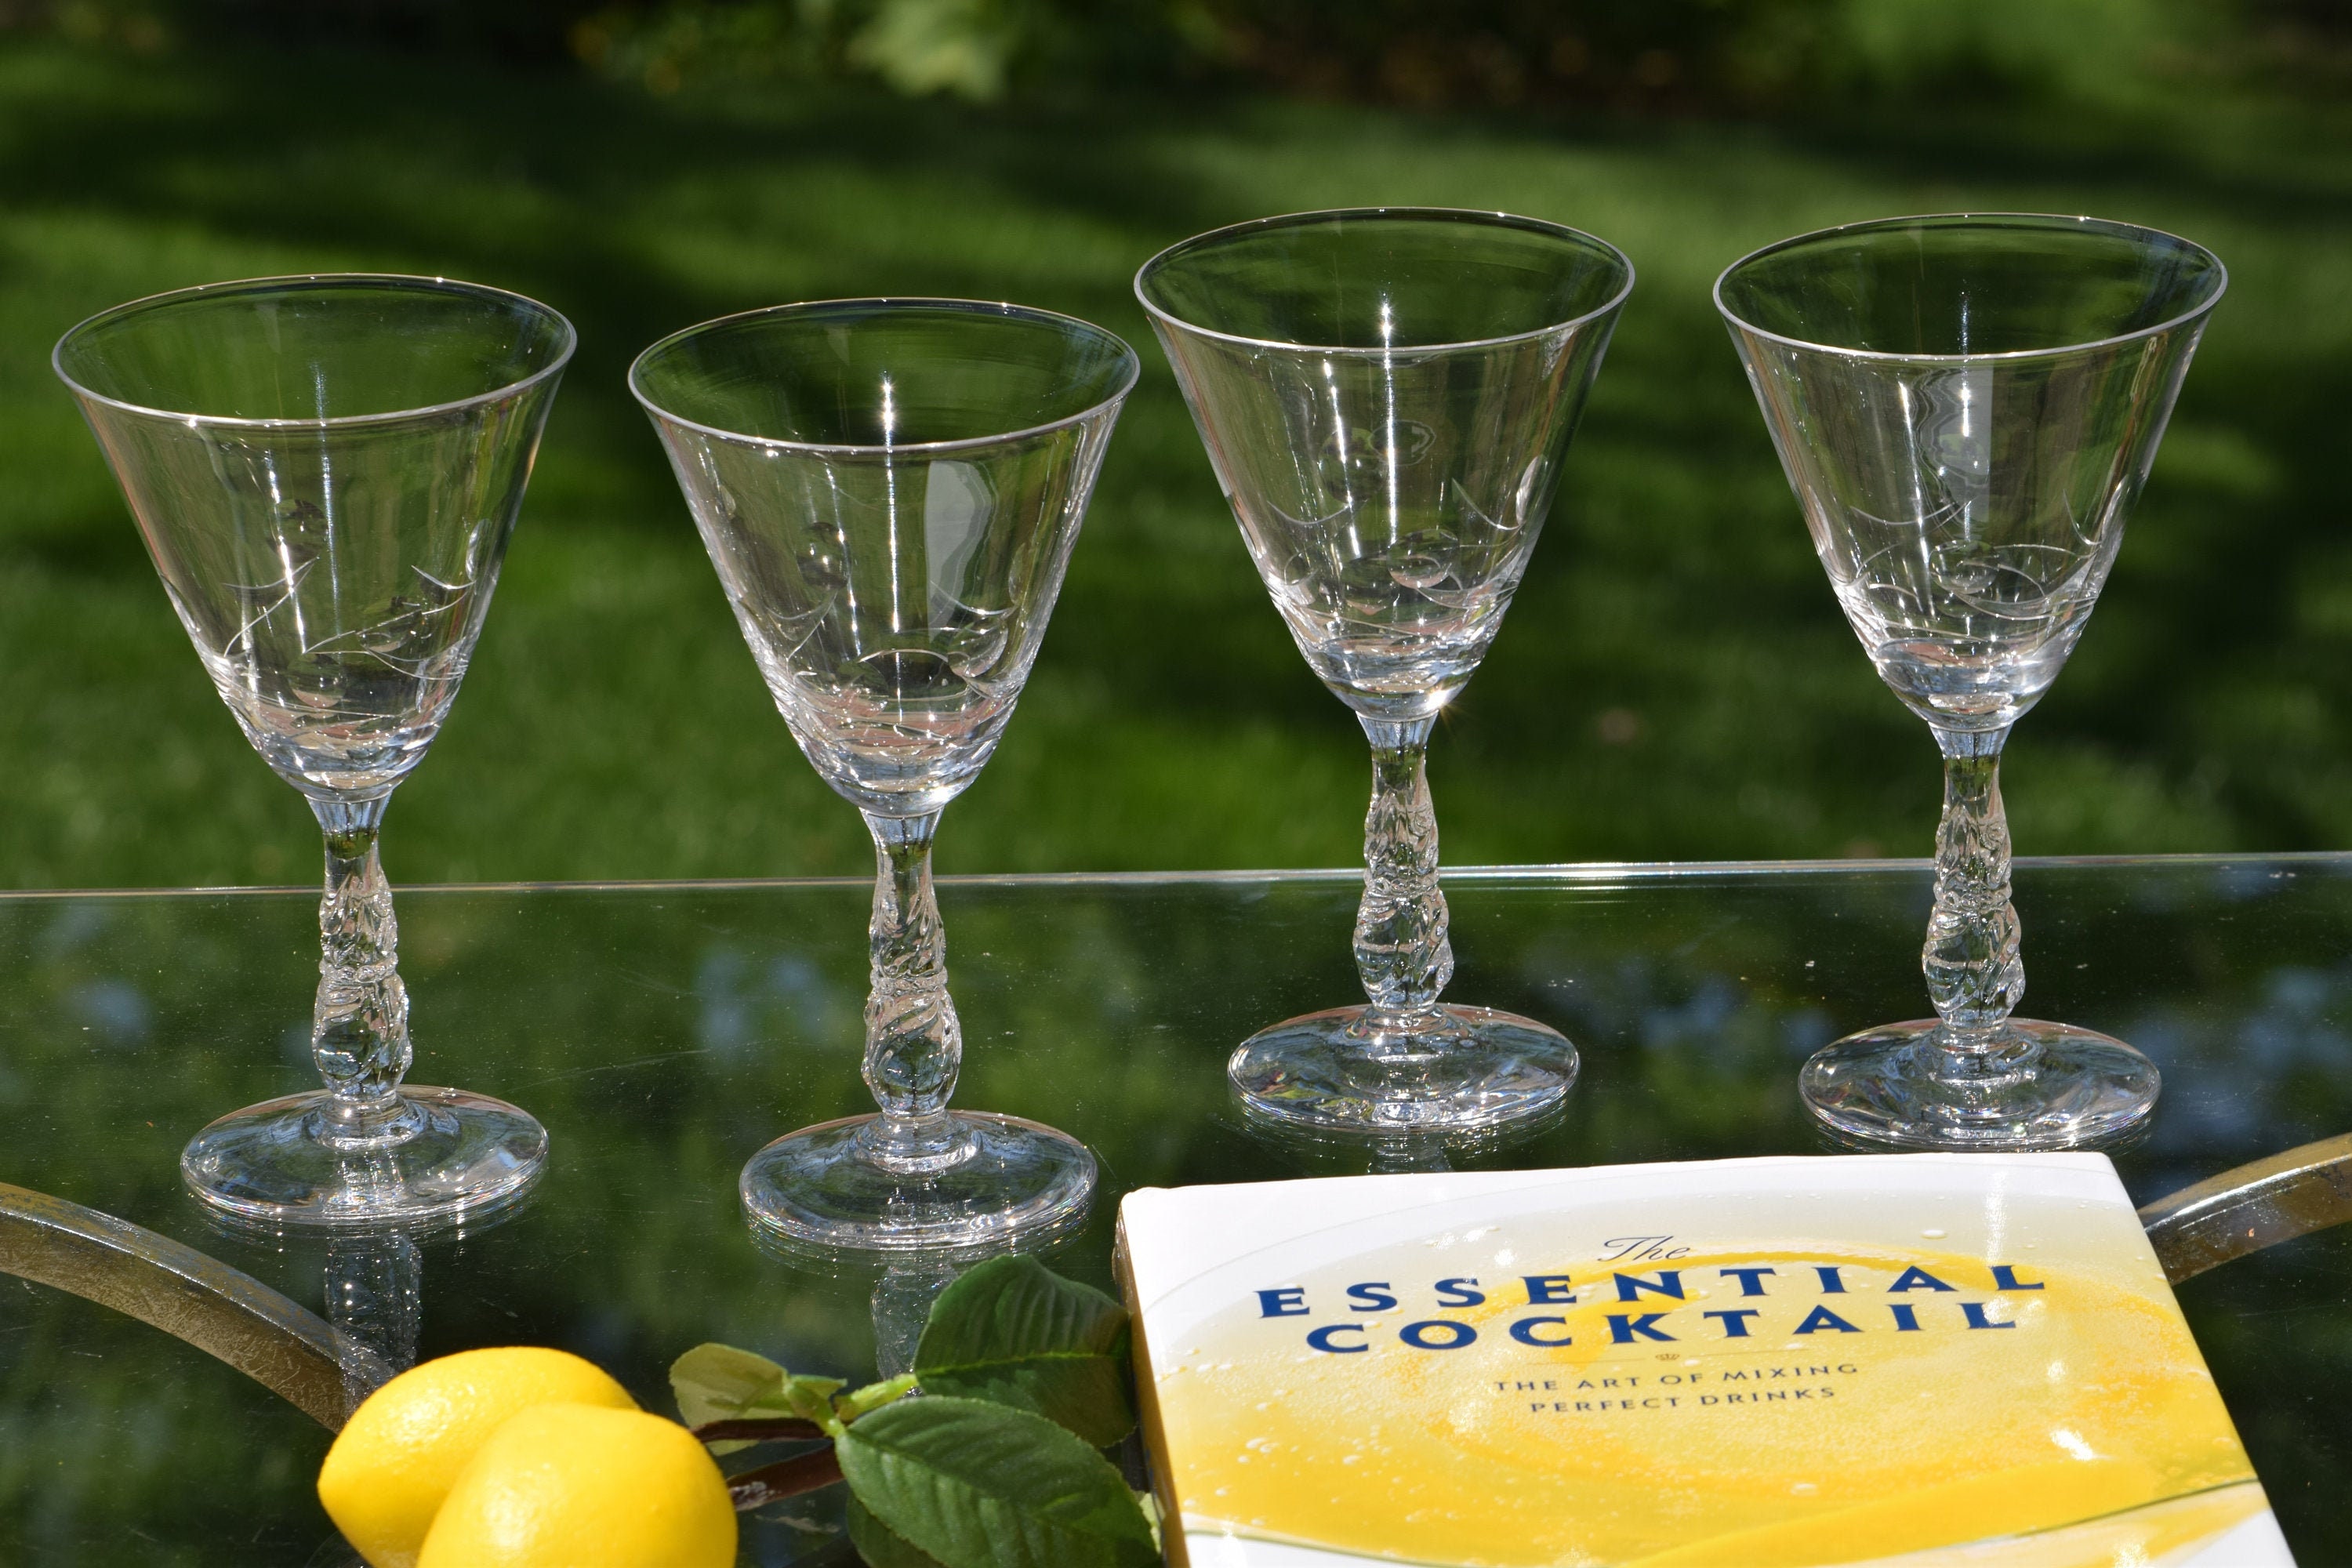 4 Vintage Etched CRYSTAL Wine - Cocktail Glasses, Set of 4